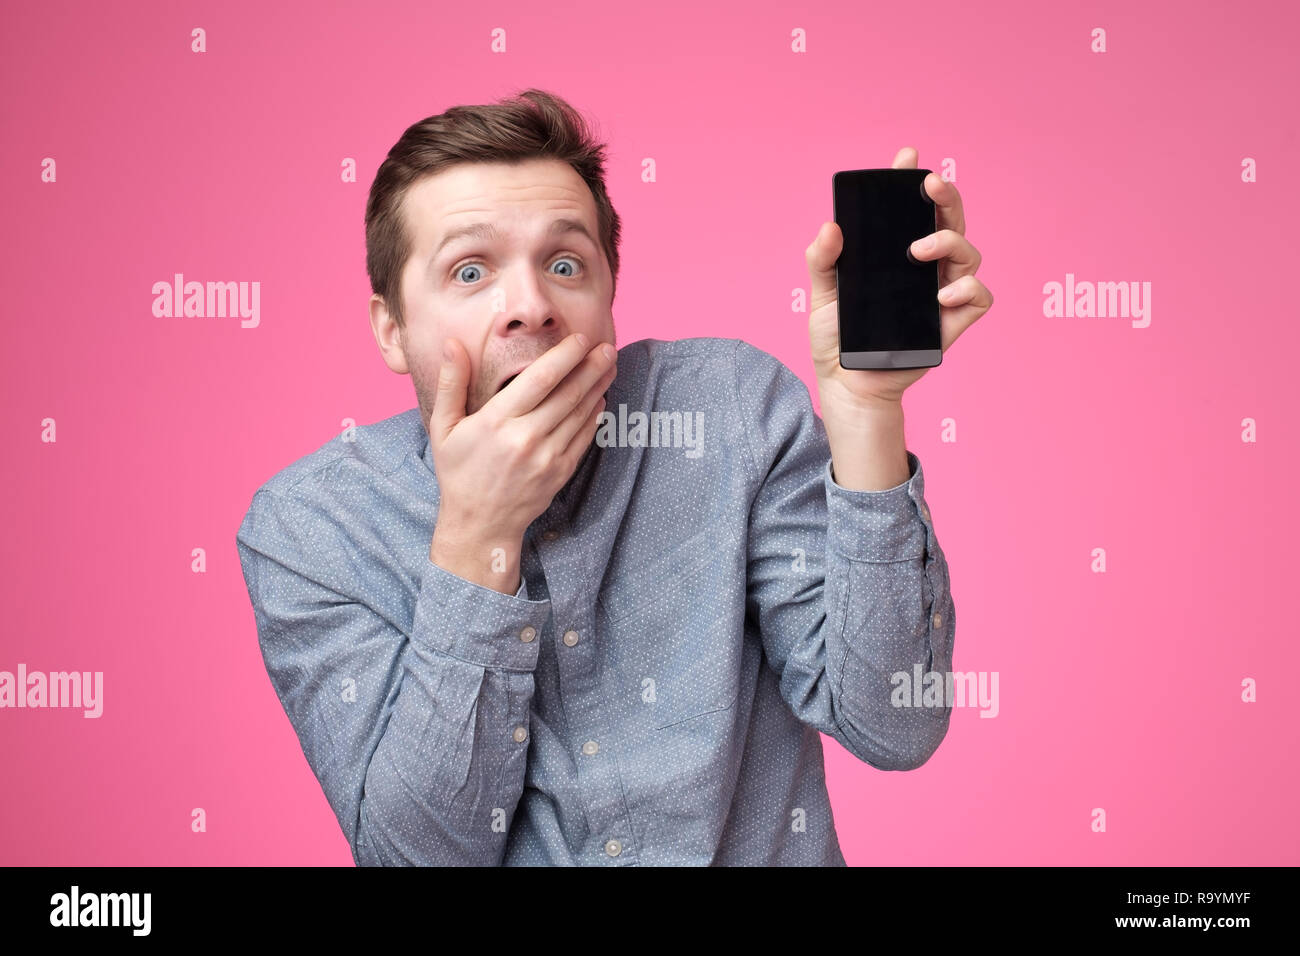 Handsome young man holding smartphone, montrant à l'appareil photo gadget, isolé sur fond rose. Banque D'Images